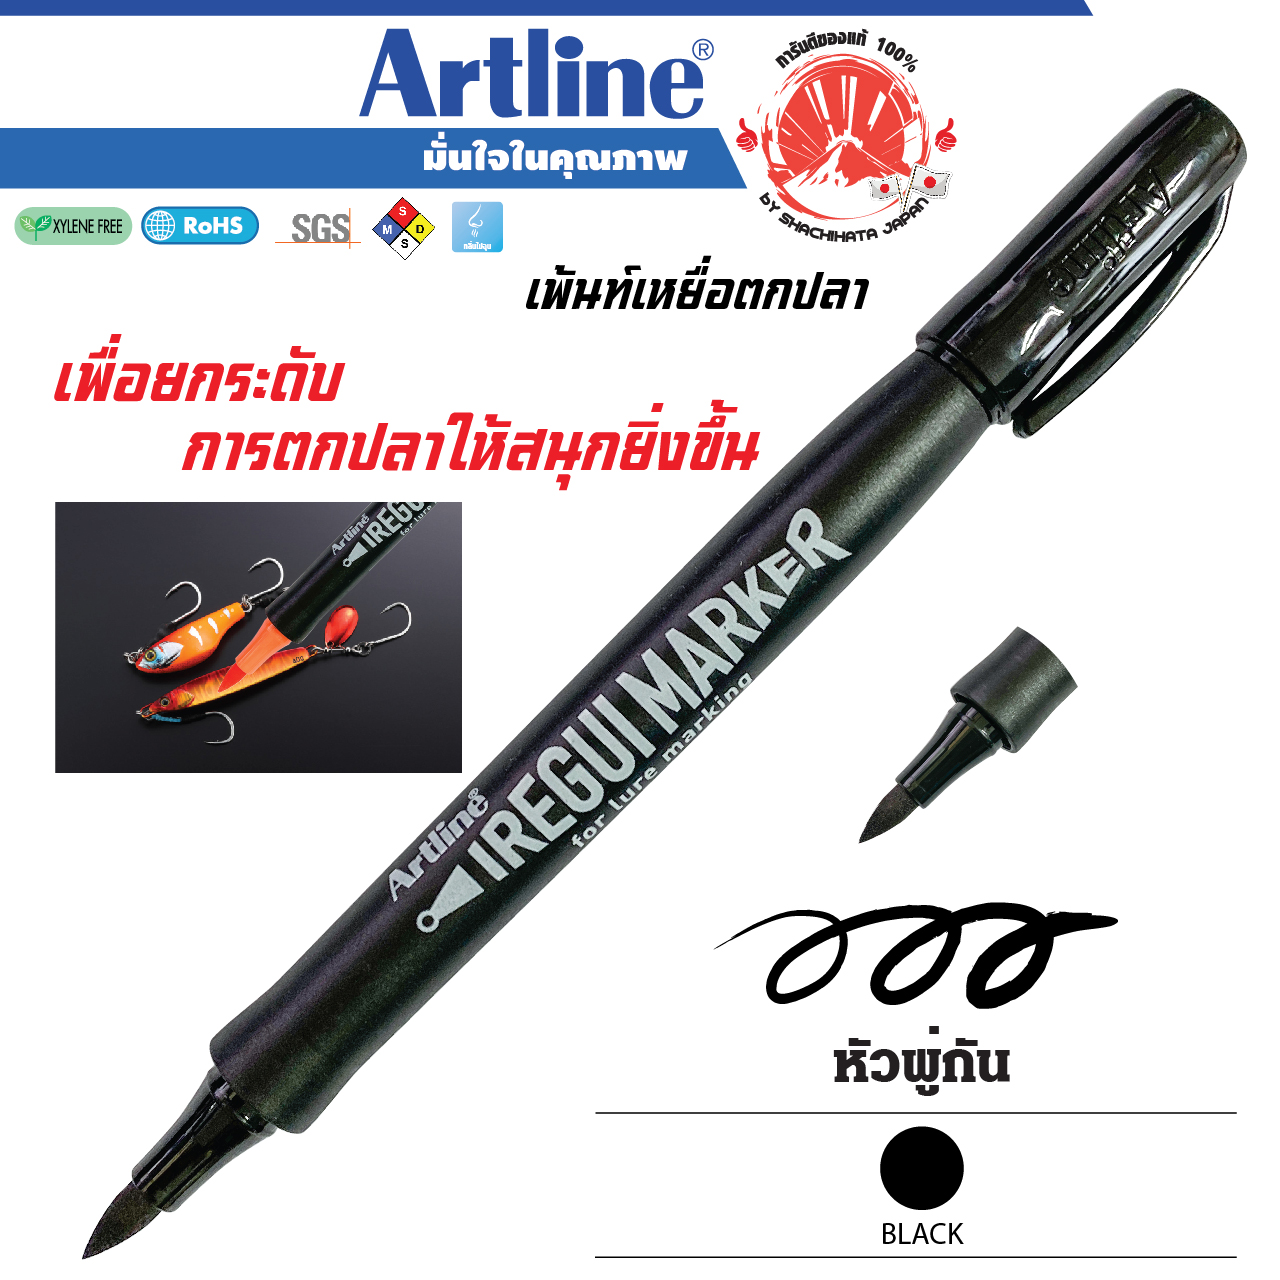 Artline Long Nib Markers, 1.0 mm Writing Width, Black, 12 Pack (EK-710)